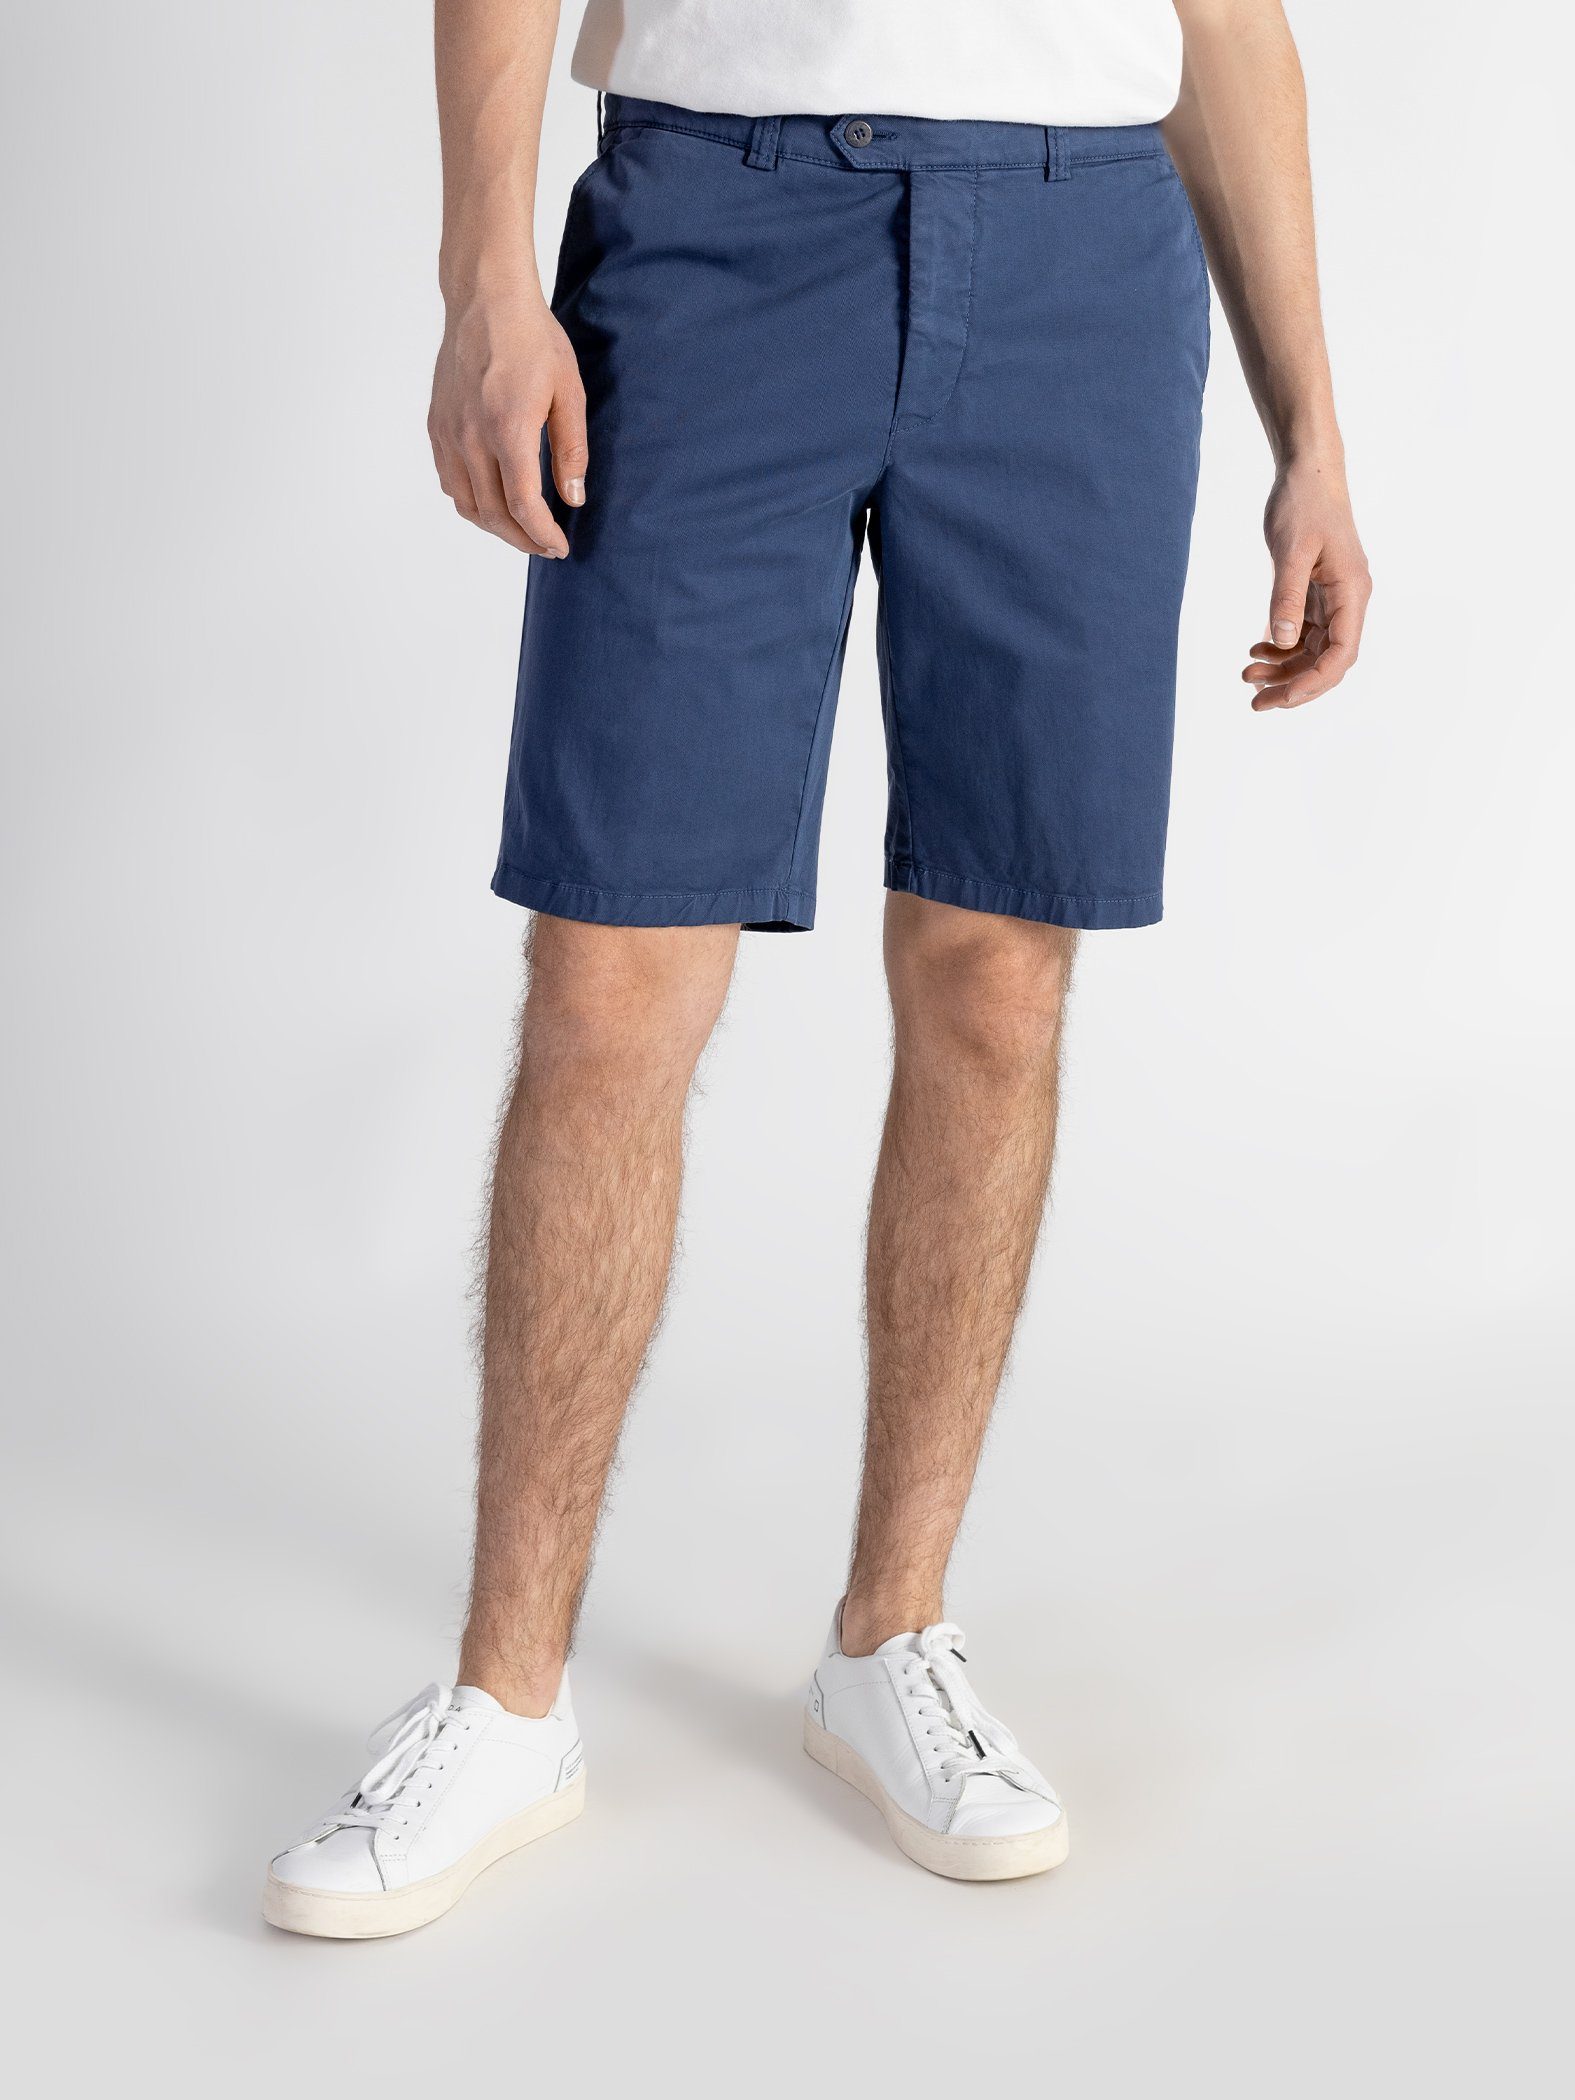 Bund, Shorts Farbauswahl, TwoMates mit Shorts GOTS-zertifiziert elastischem Blau